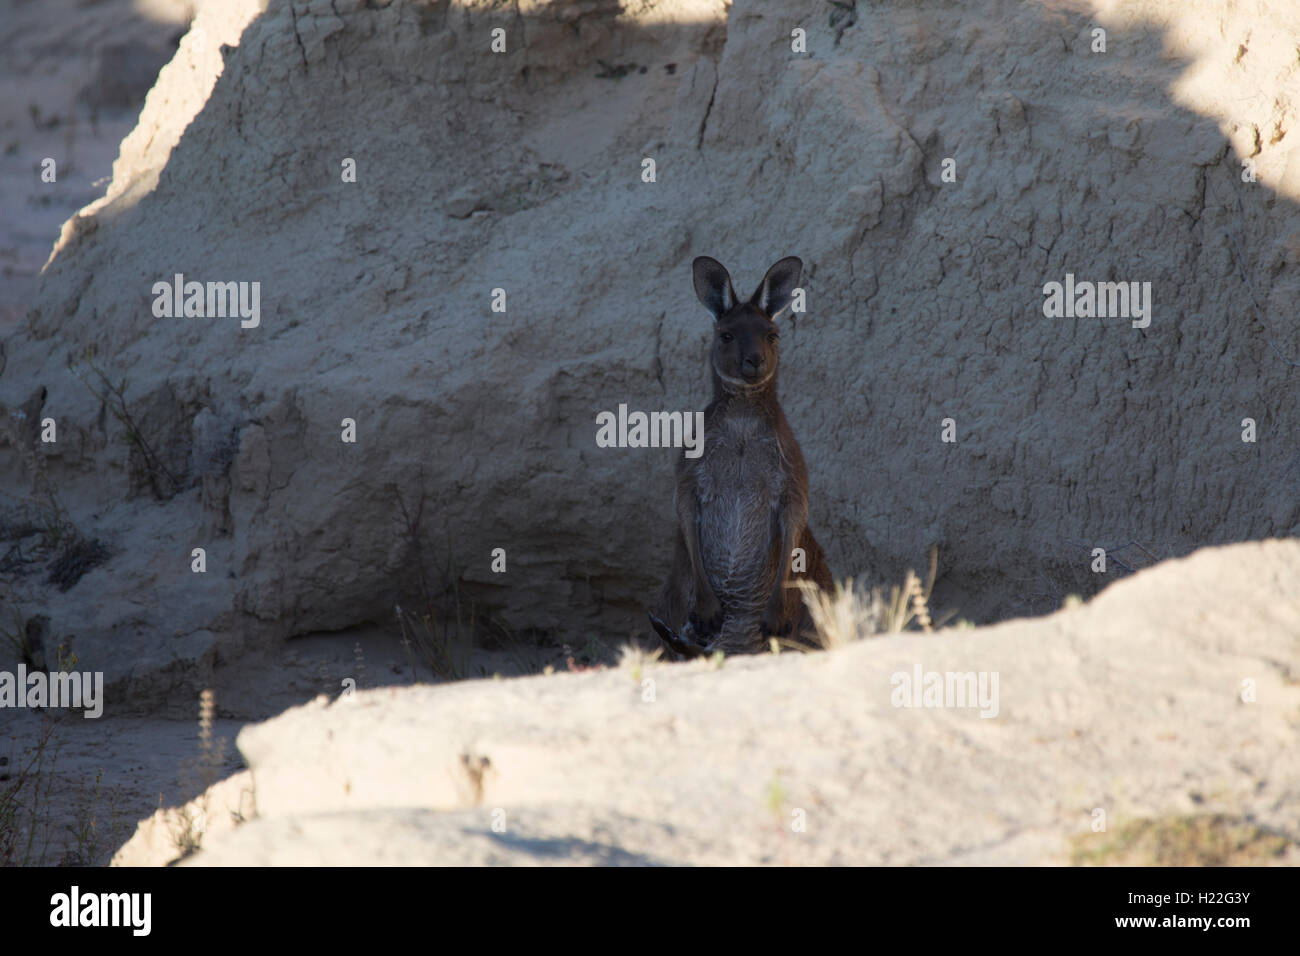 Beherbergung in die Wände von China auf Mungo National Park New South Wales Australien Känguru Stockfoto